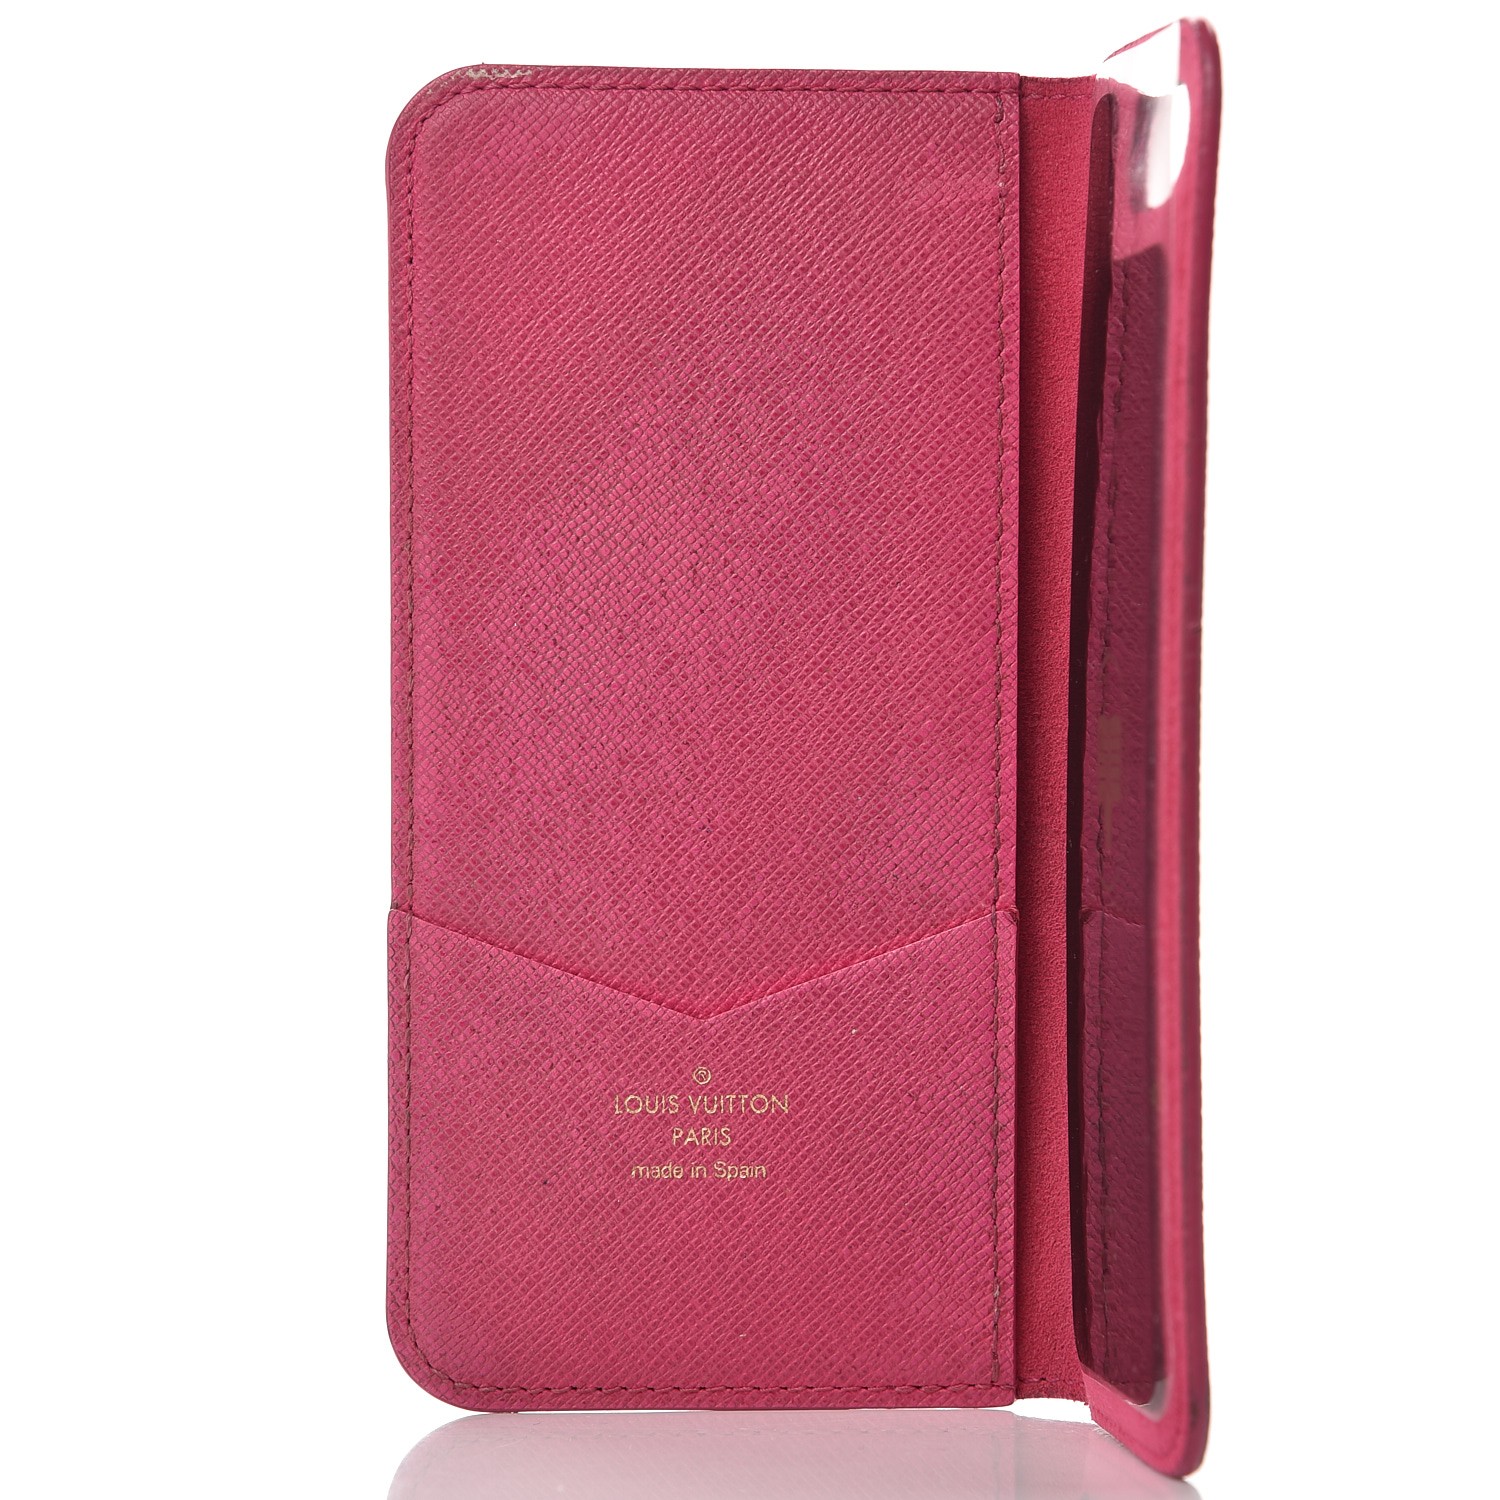 LOUIS VUITTON Monogram iPhone 7/8 Plus Folio Case Rose Pink 237977